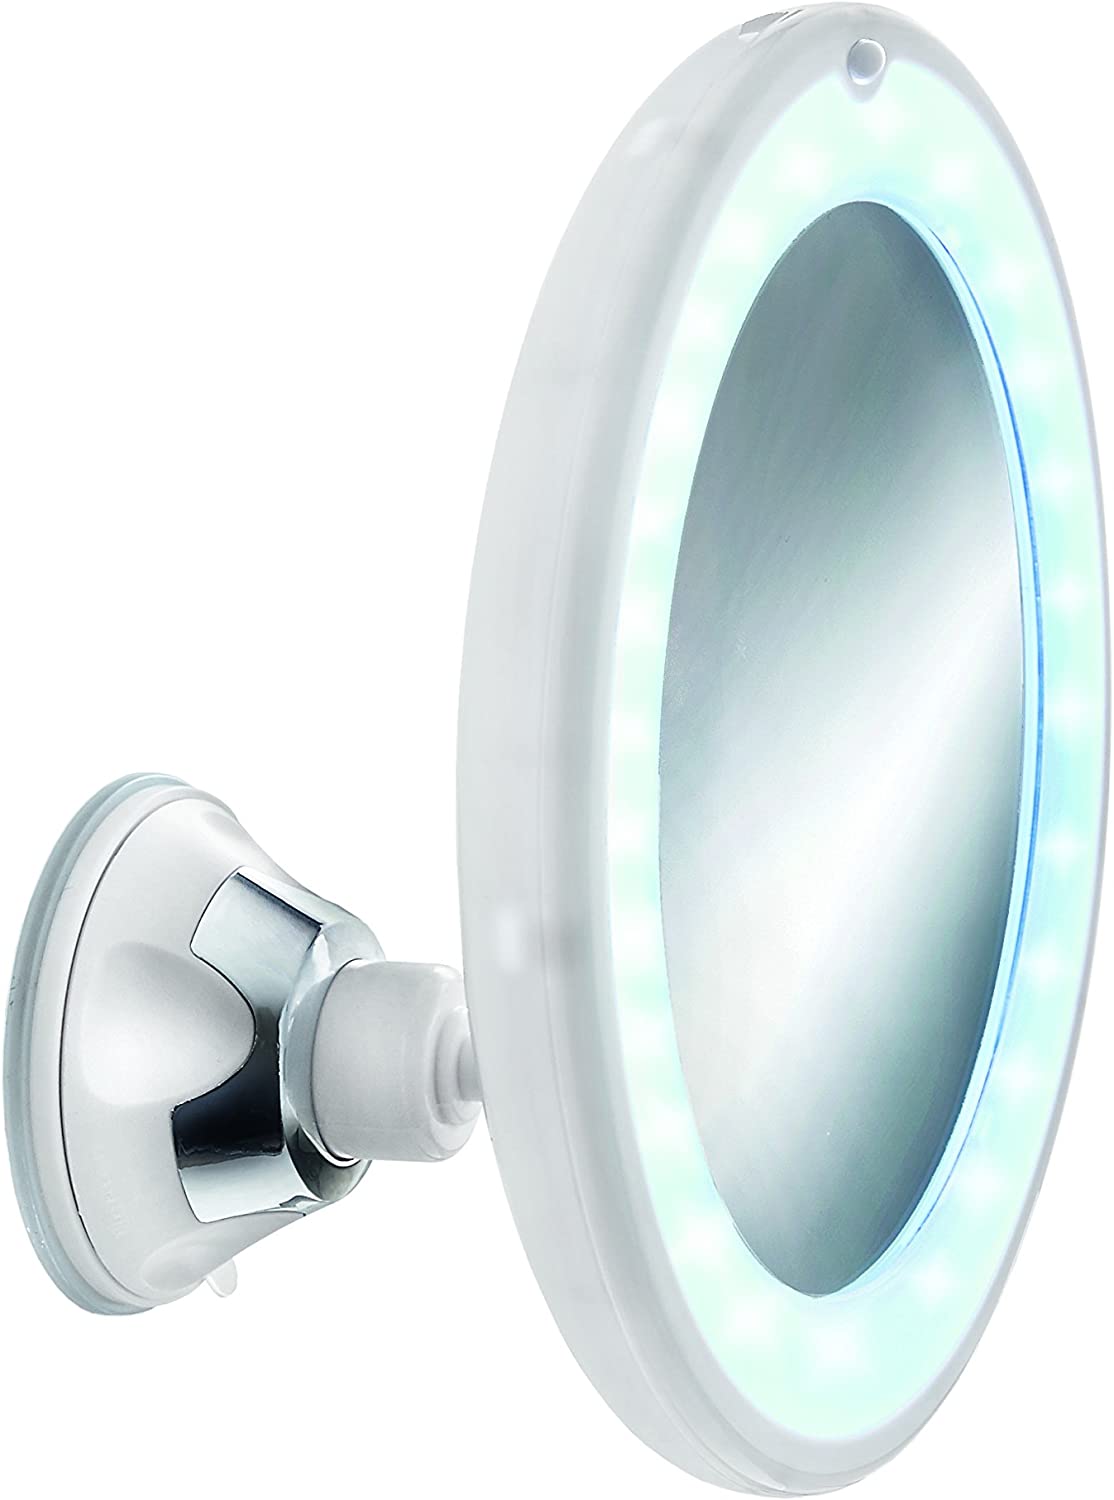 Kosmetikspiegel Flexy Light, mit 5-facher Vergrößerung, Größe: 17,5 x 17,5 x 10,5 cm, Material: Polystyrol / Glas